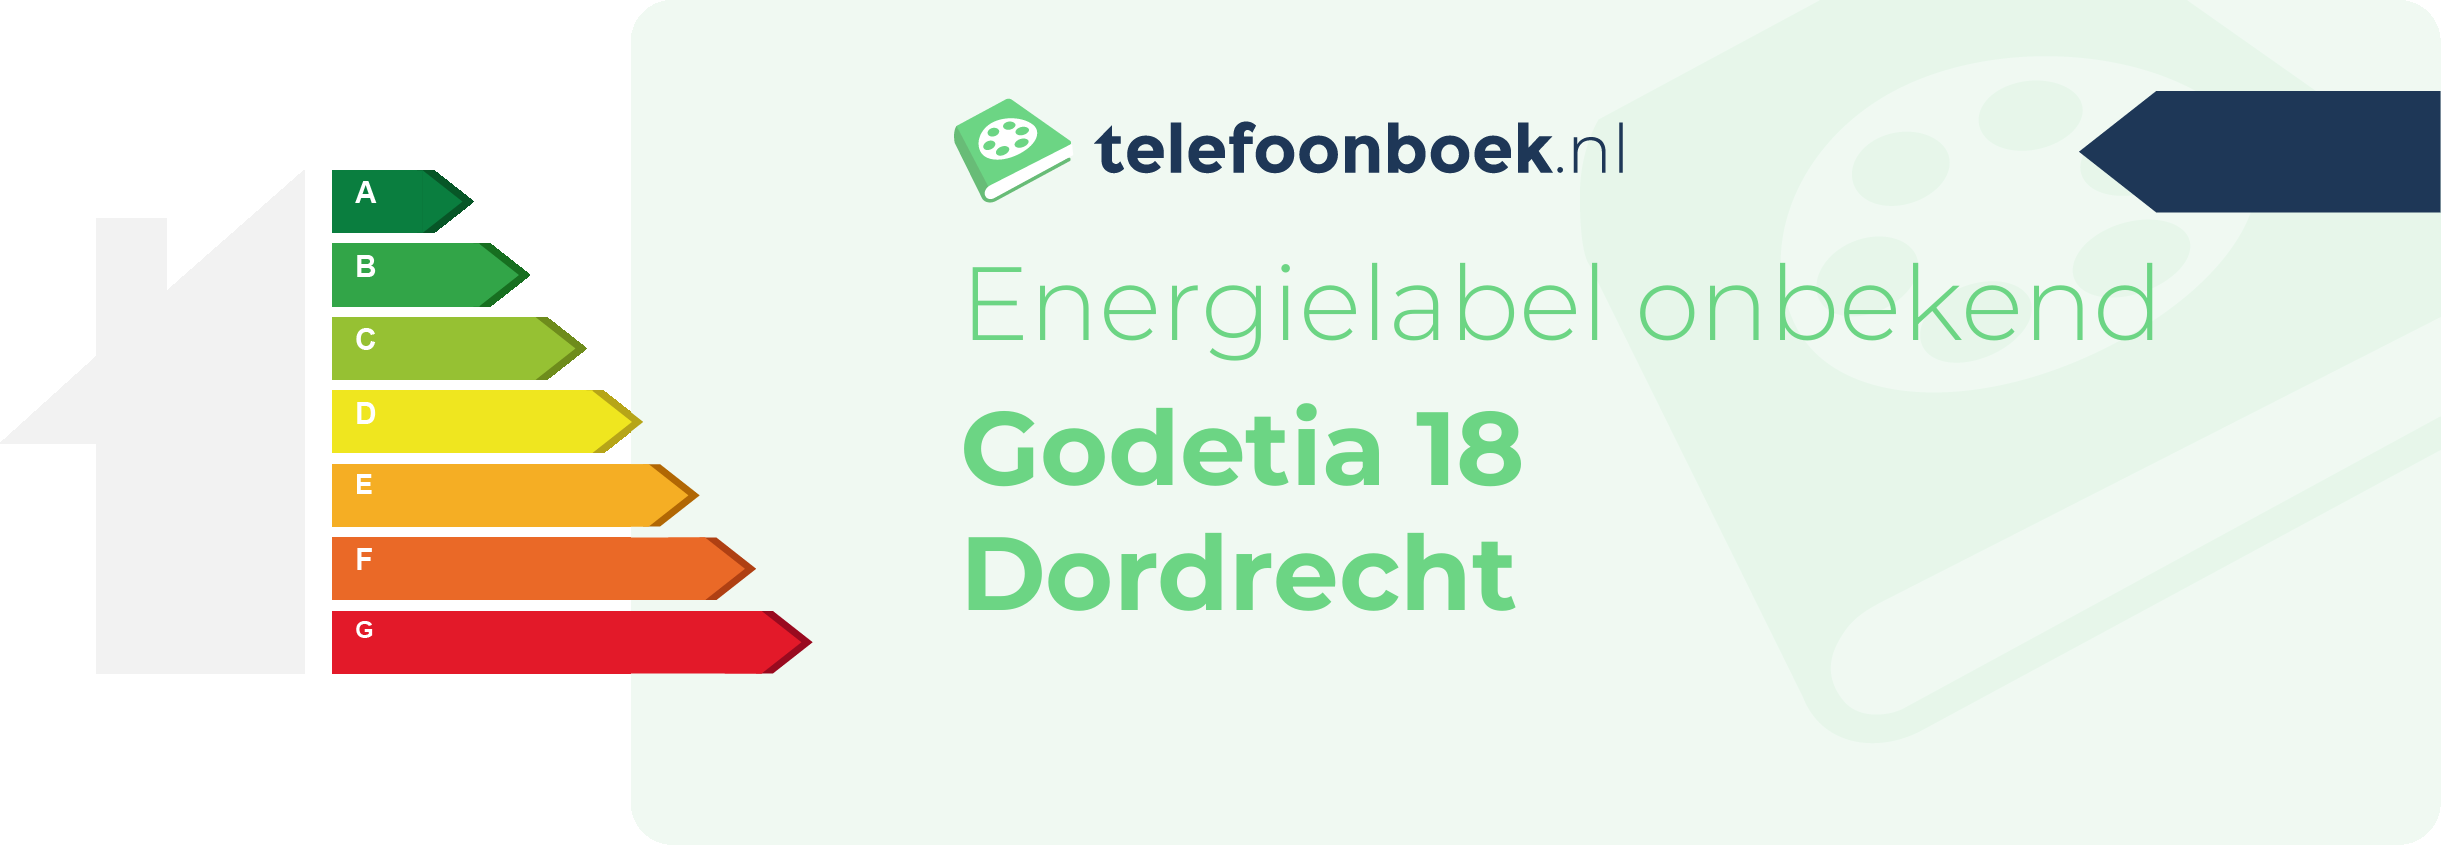 Energielabel Godetia 18 Dordrecht